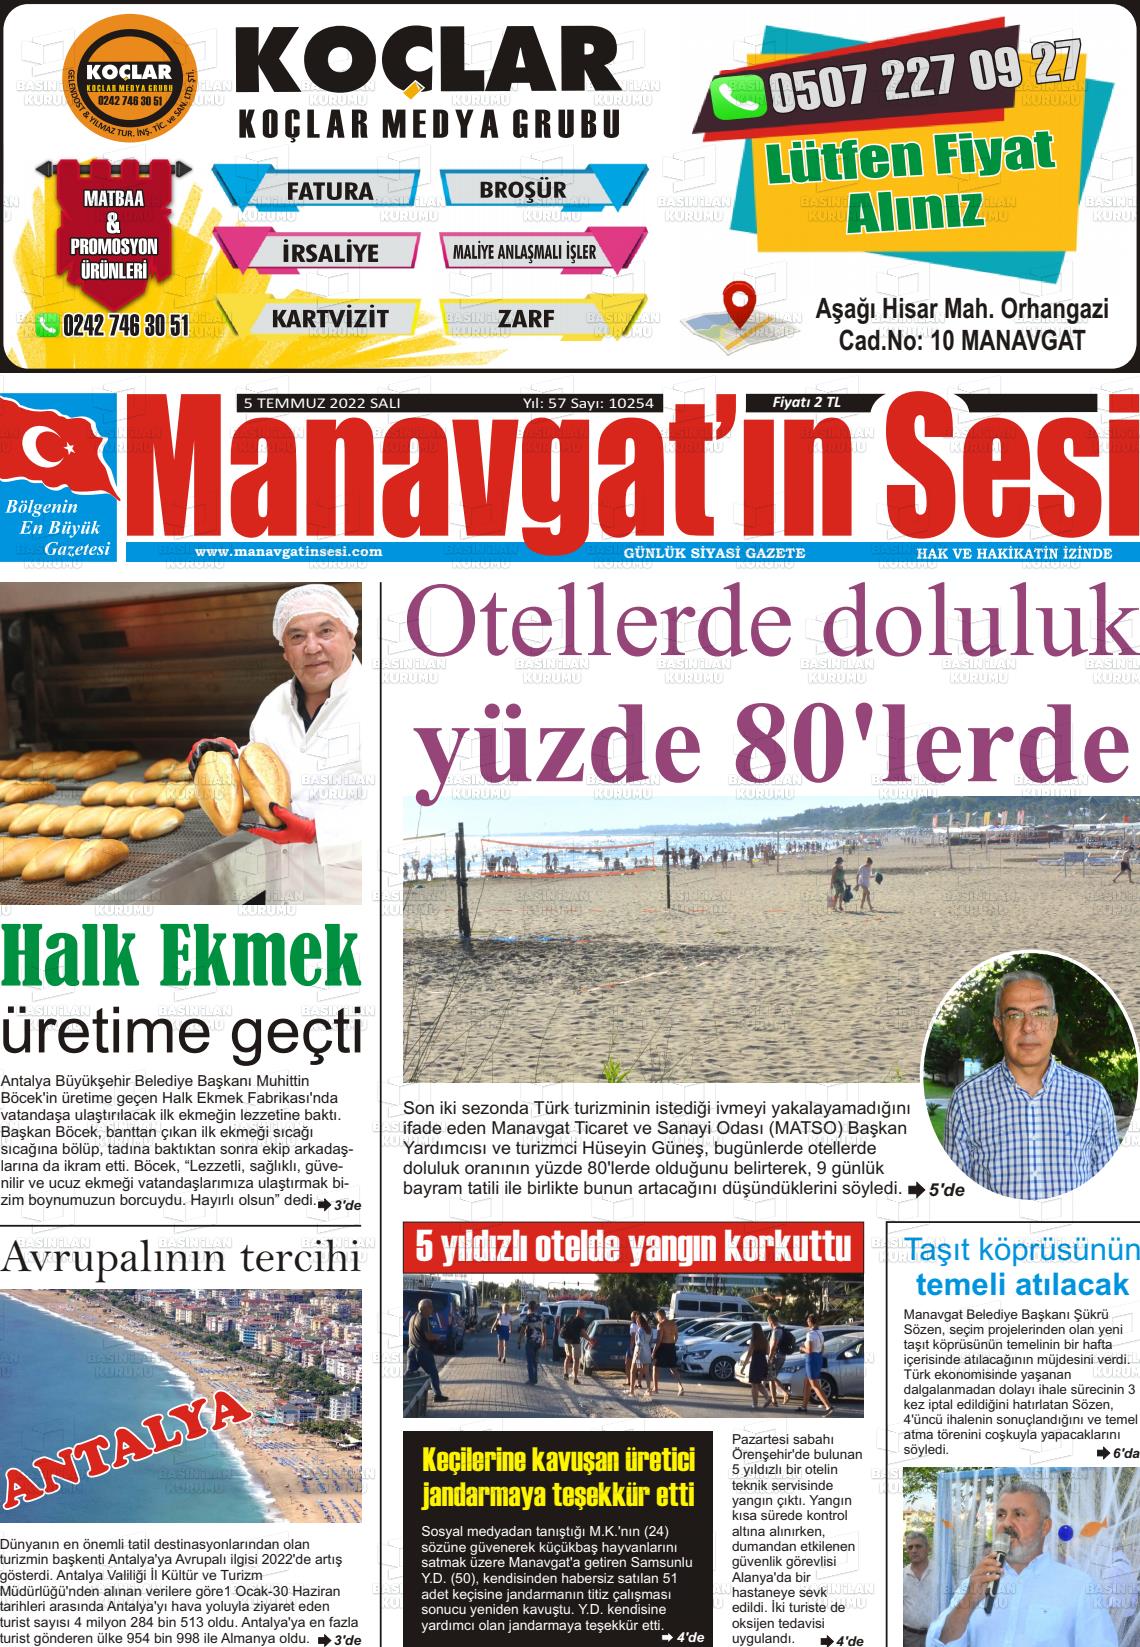 05 Temmuz 2022 Manavgat'ın Sesi Gazete Manşeti